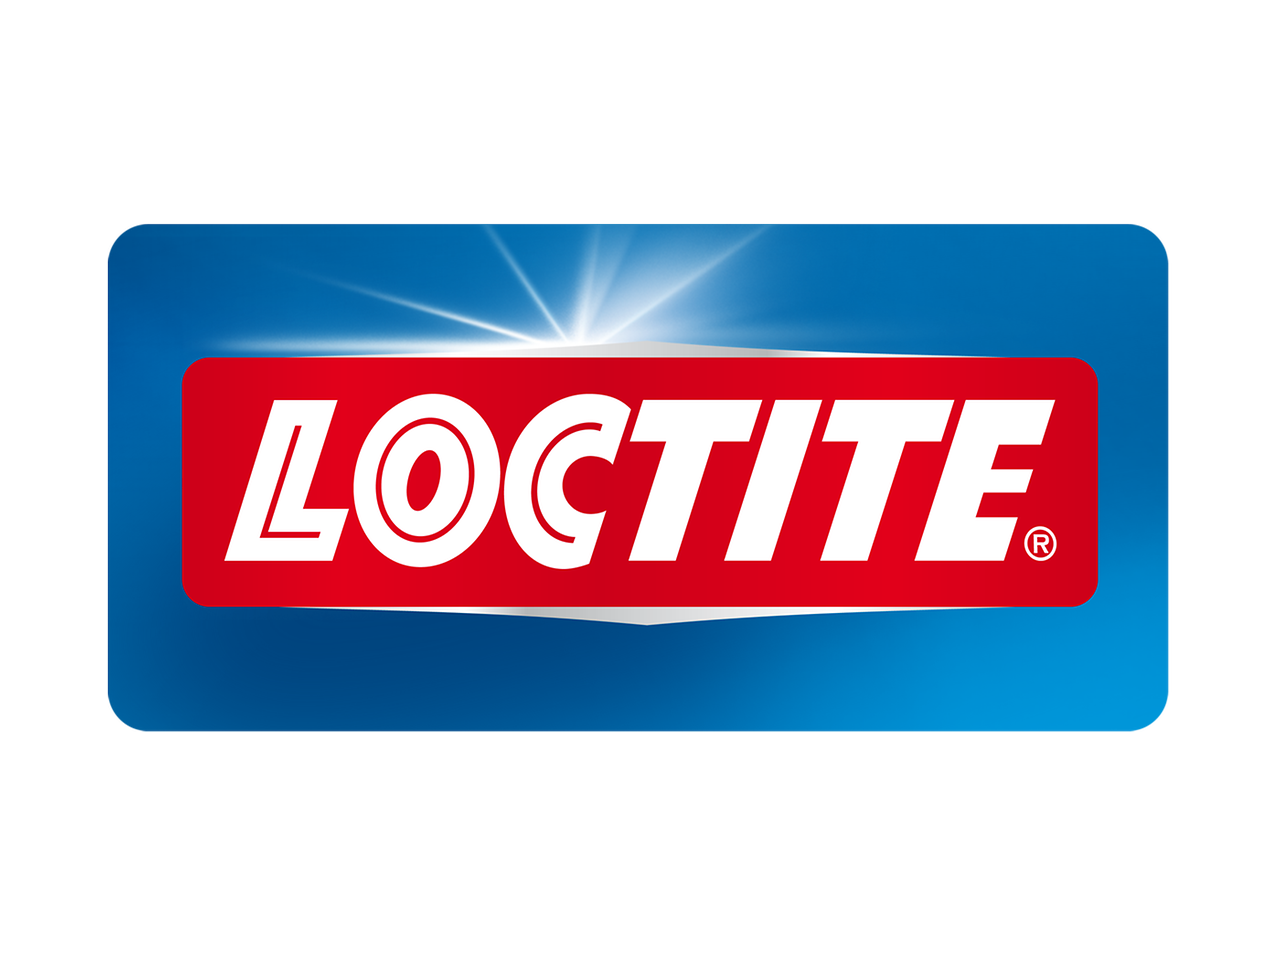 Loctite consumer logo